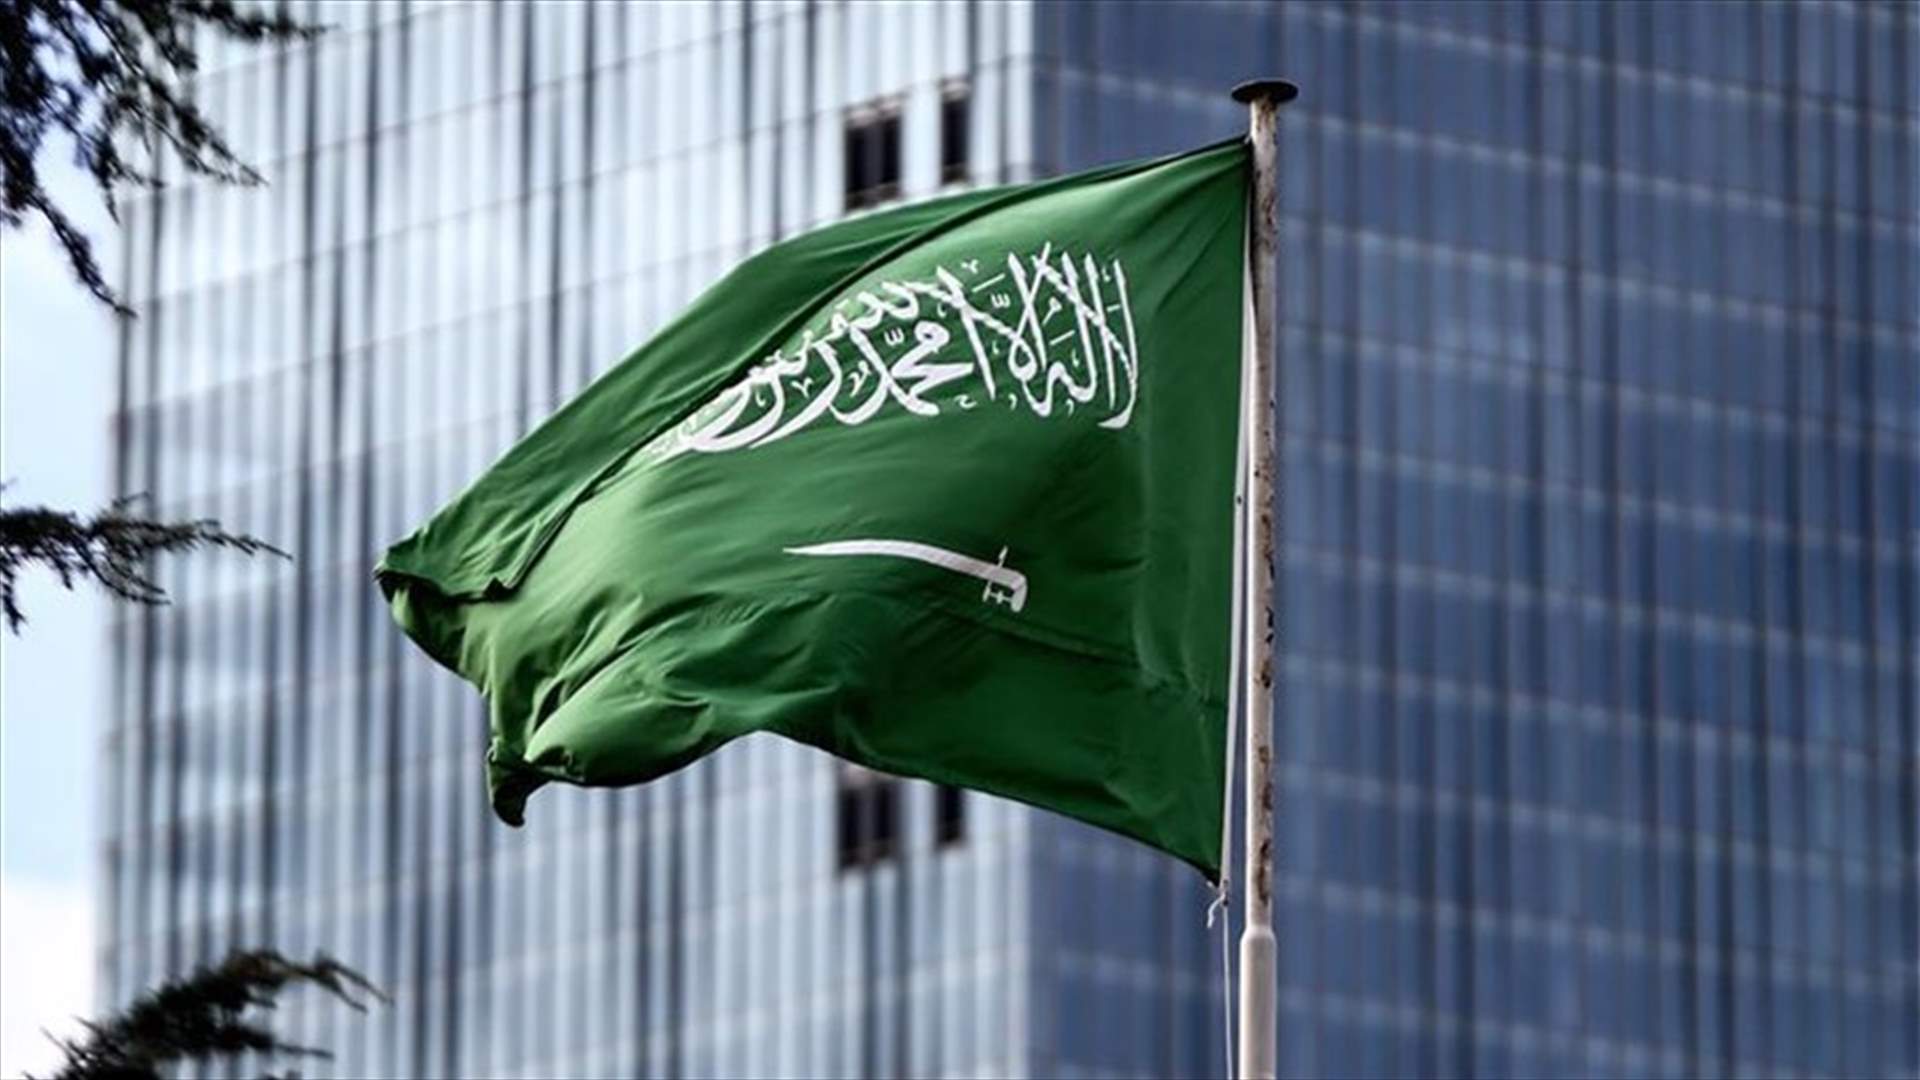 السعودية تؤكد تنظيم مؤتمر افتراضي للمانحين لليمن بالشراكة مع الأمم المتحدة